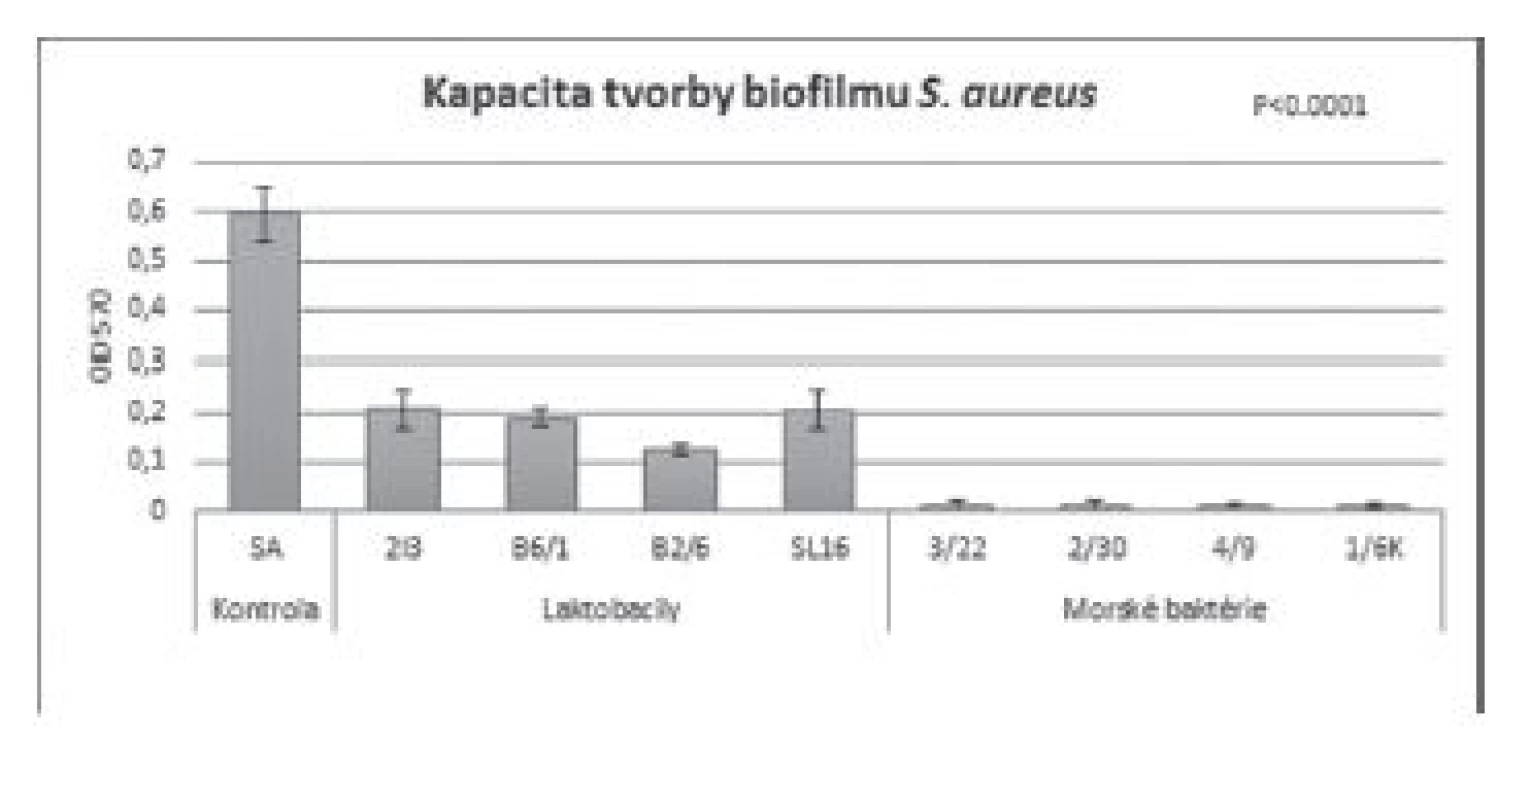 Antibiofilmová aktivita BS (c = 8,57 mg/ml) izolovaných
z laktobacilov a morských baktérií voči S. aureus CCM 3953